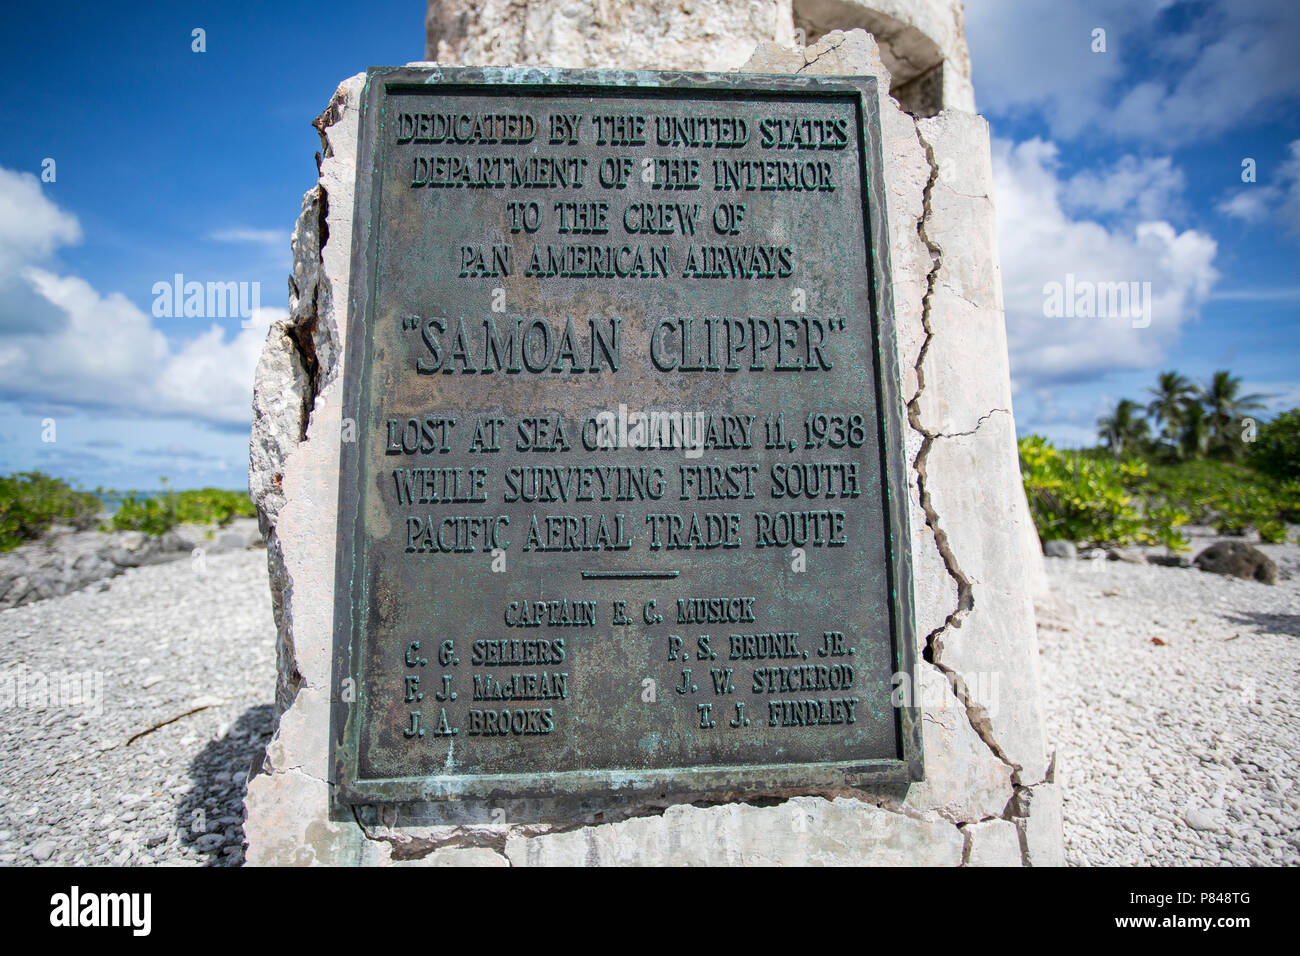 Denkmal für die Pan American Airways crew Der Samoanischen Clipper, auf dem Meer verloren, während die Vermessung der ersten South Pacific Antenne Handelsroute. Stockfoto